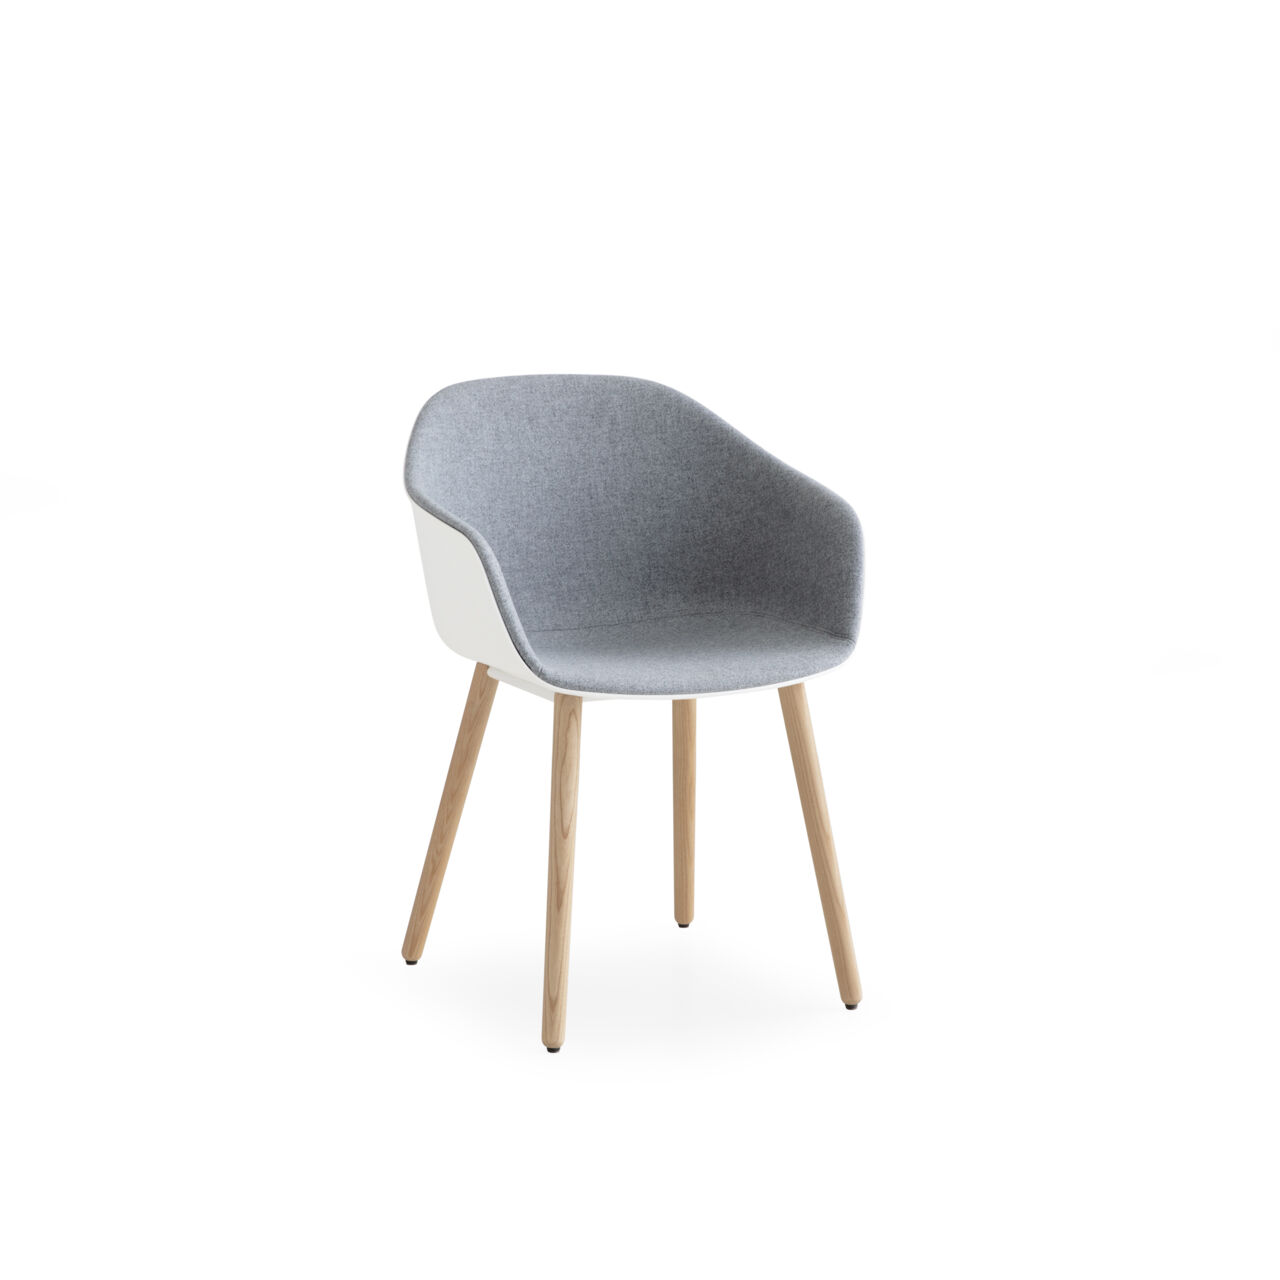 Designer-Stuhl "S313" aus der Seela AC Serie von Antti Kotilainien für lapalma